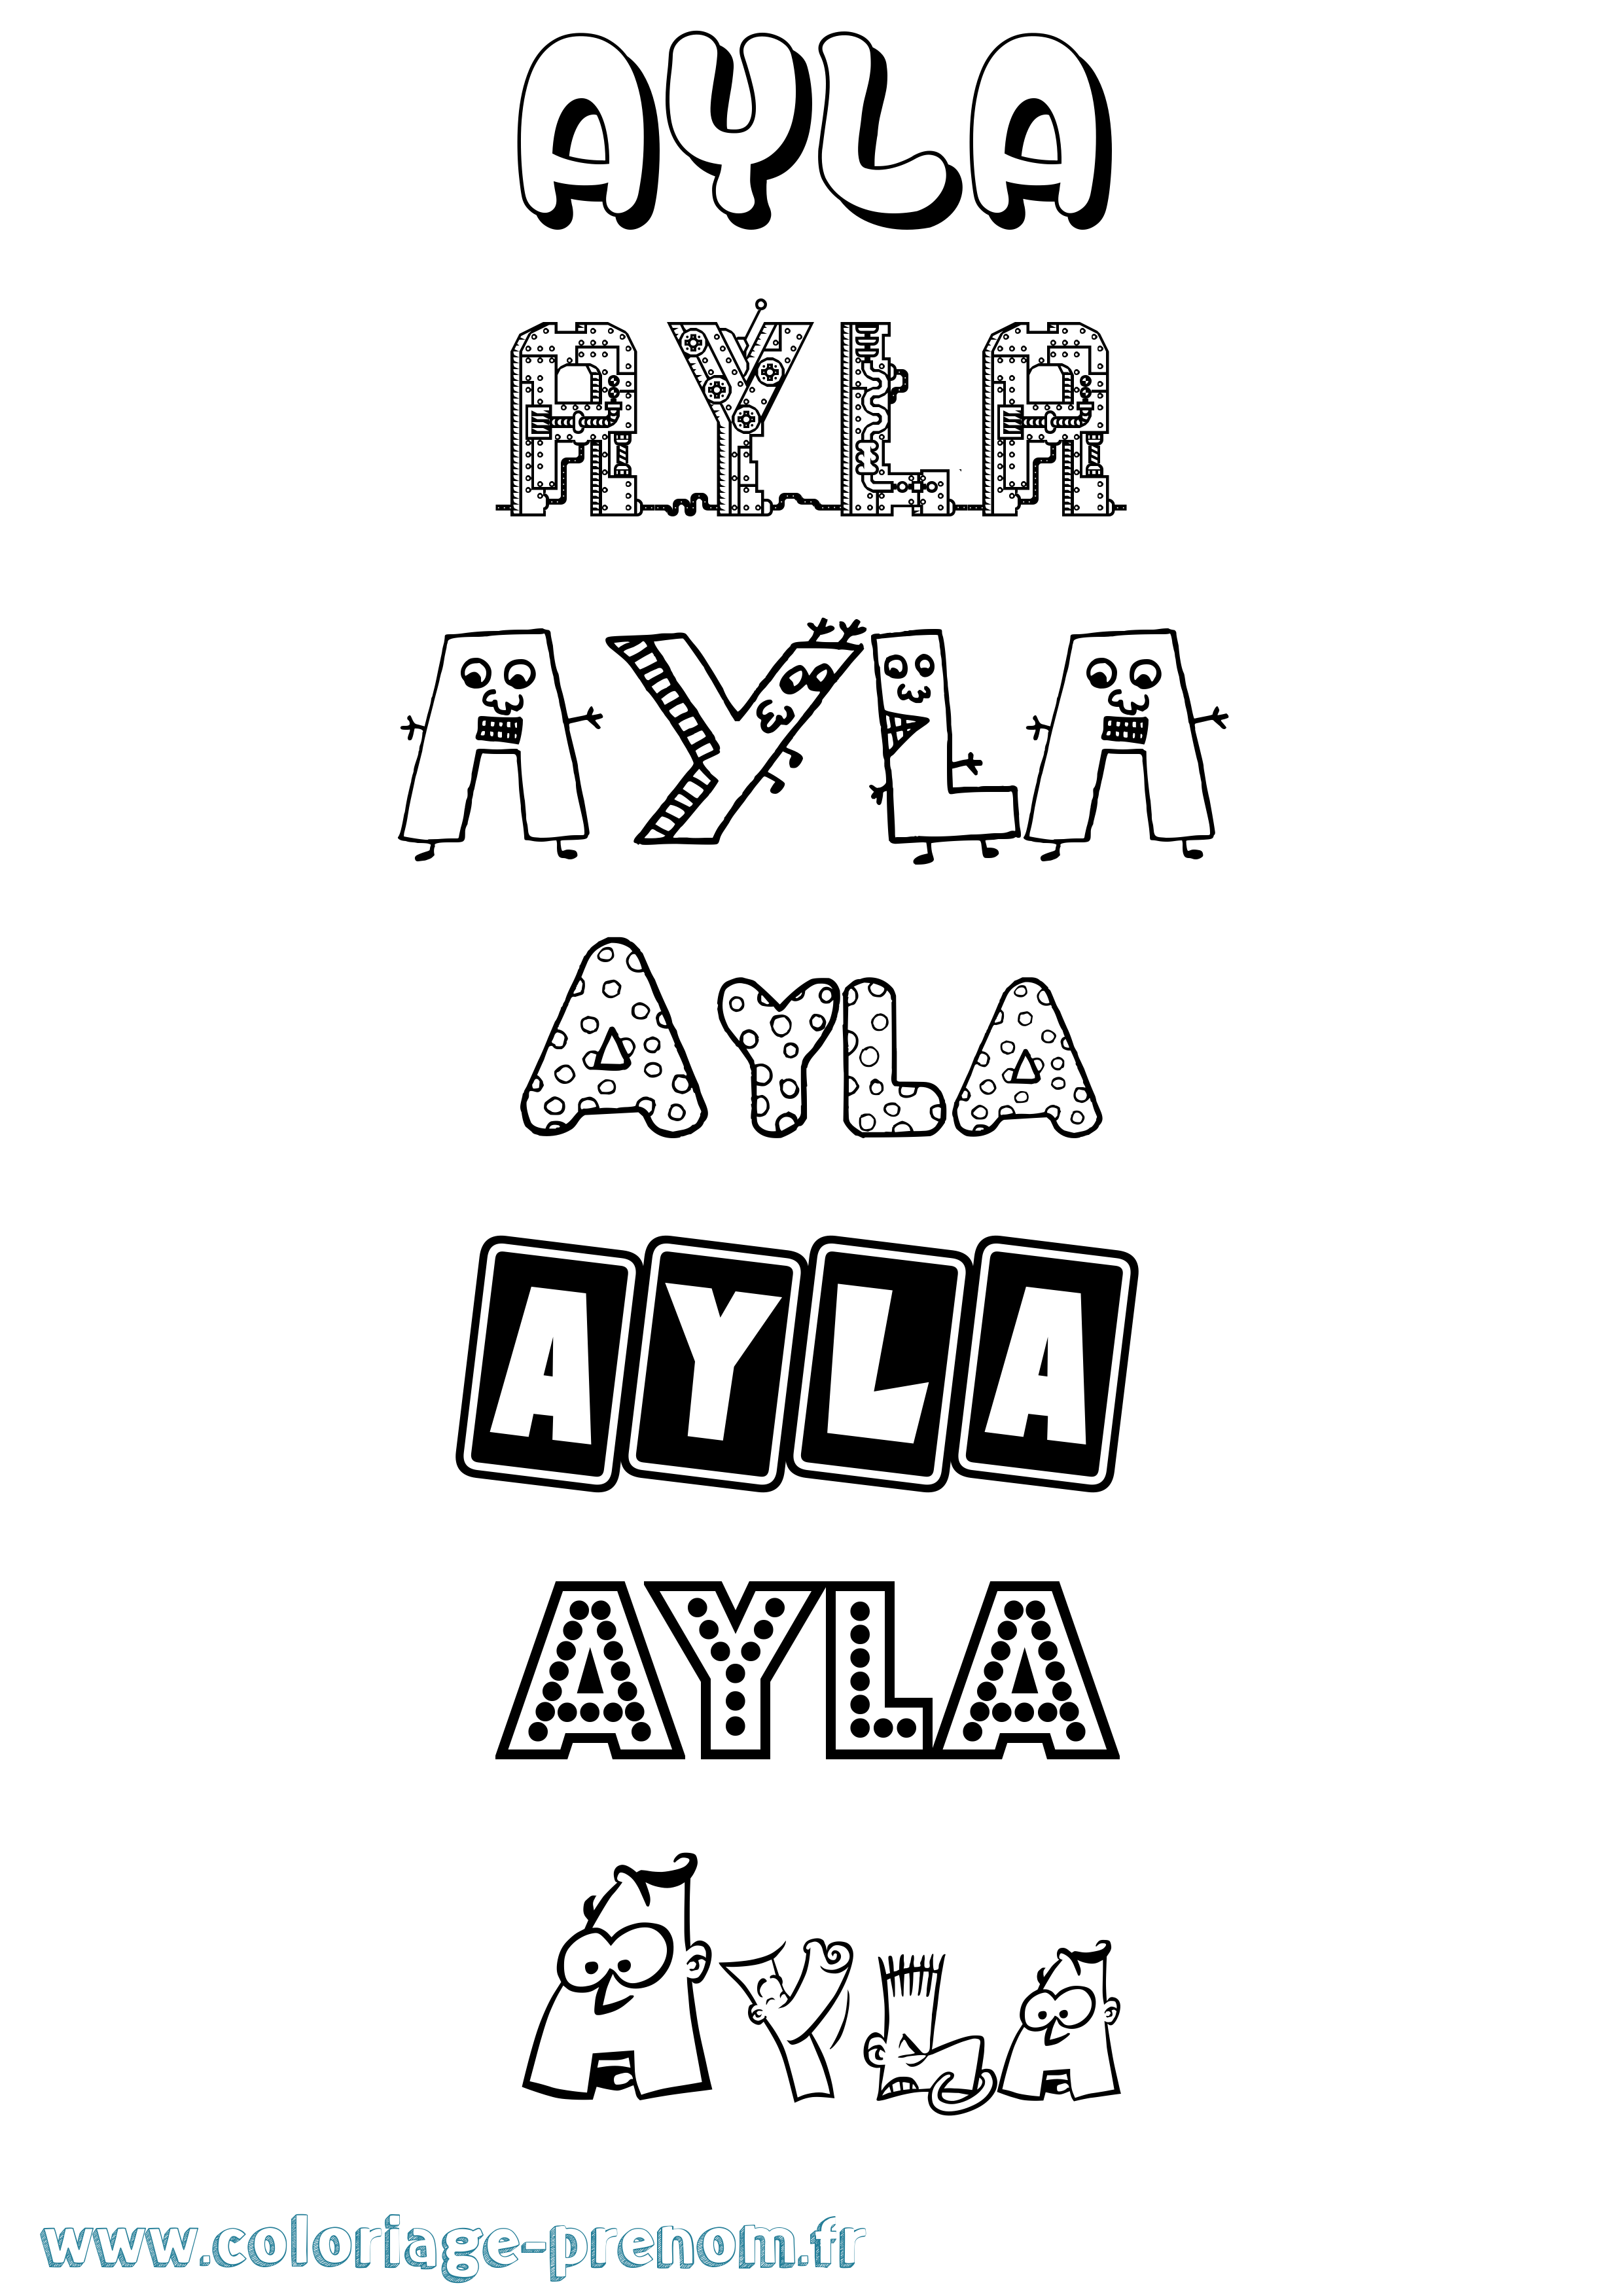 Coloriage prénom Ayla Fun